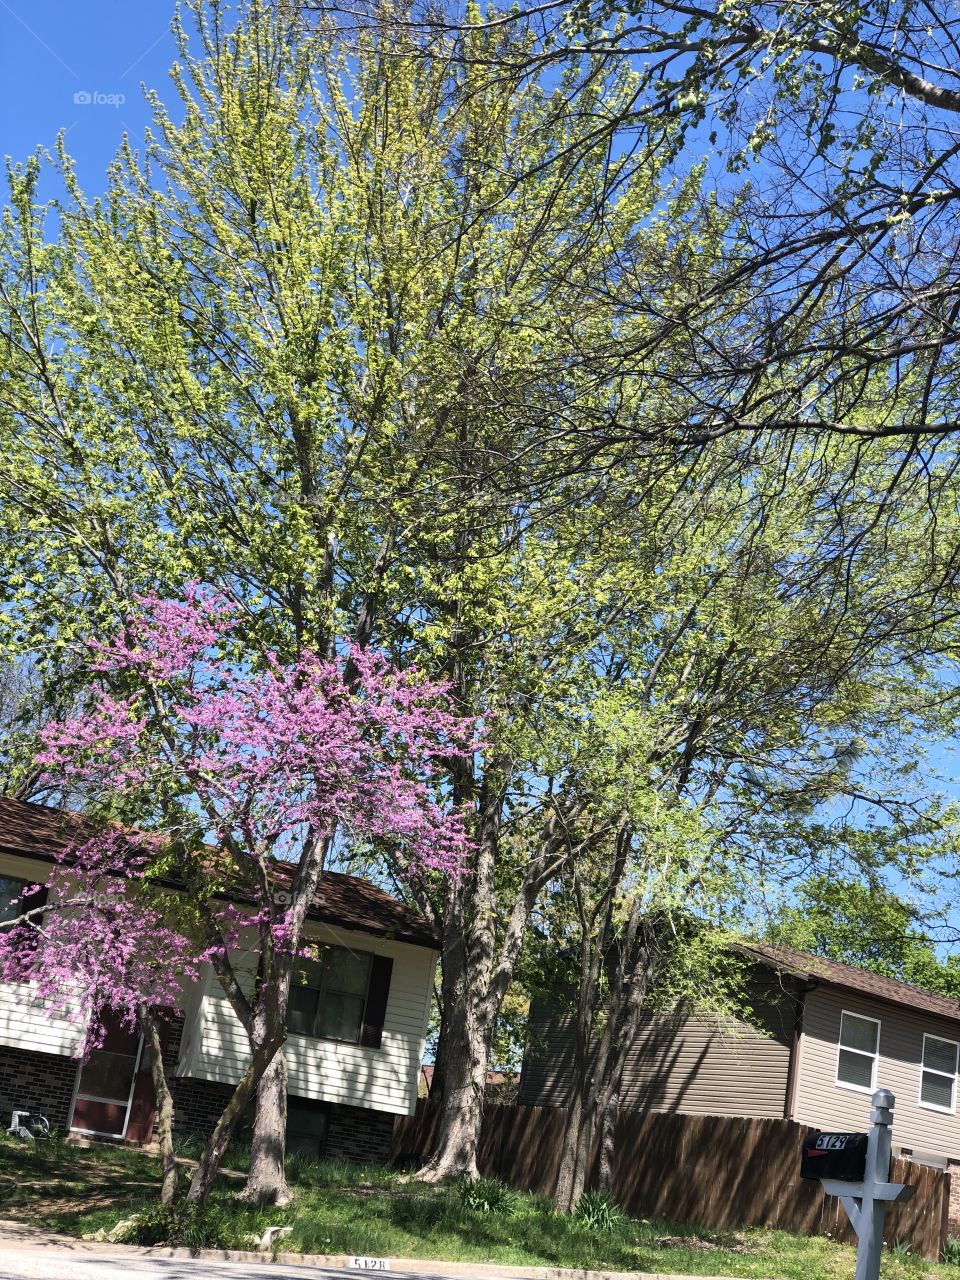 Beautiful spring tree!